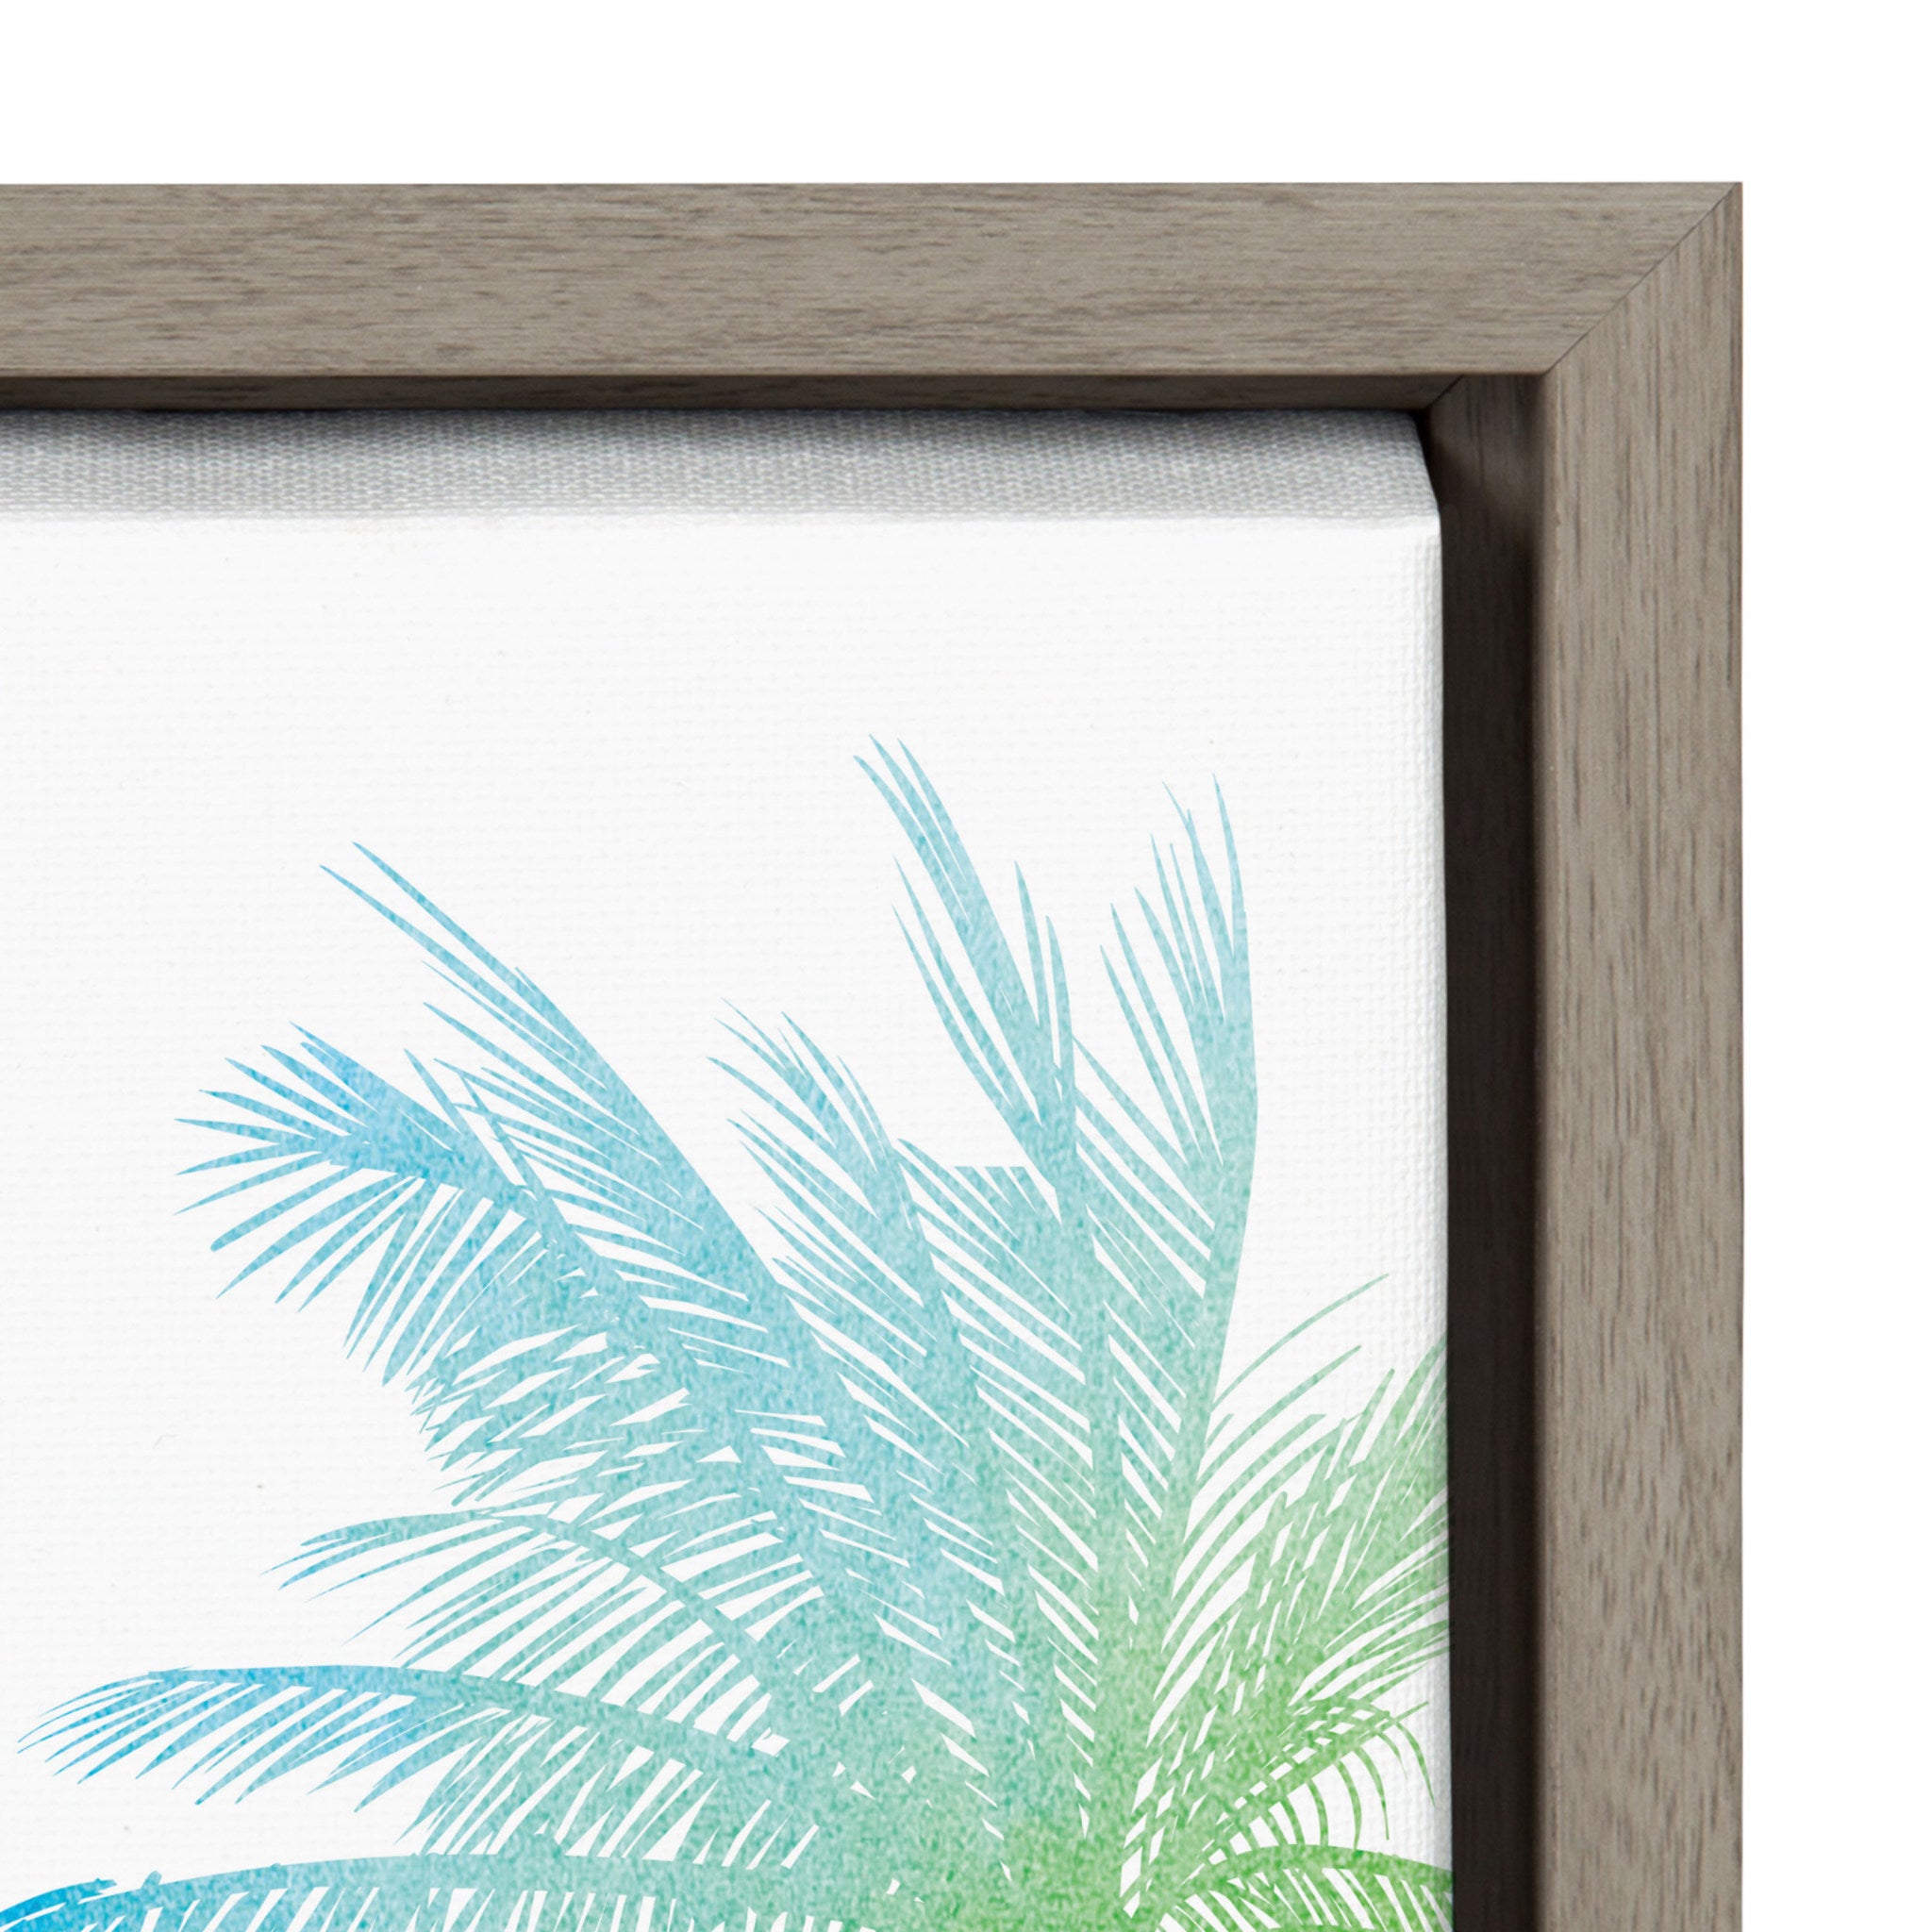 Sylvie Rainbow Palms Framed Canvas by Nikki Chu